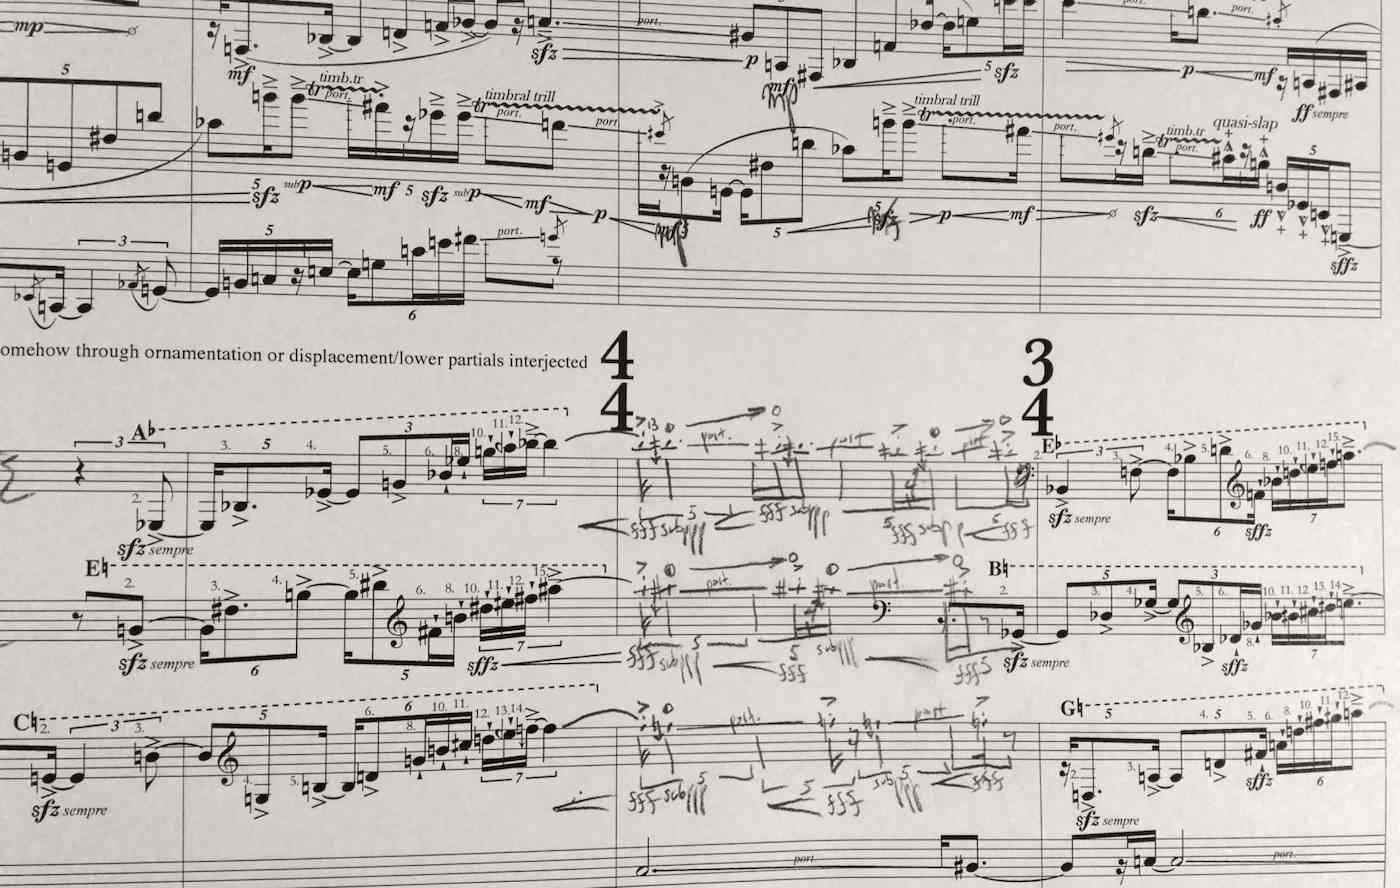 2014-double-concerto-sketches-add-manuscript